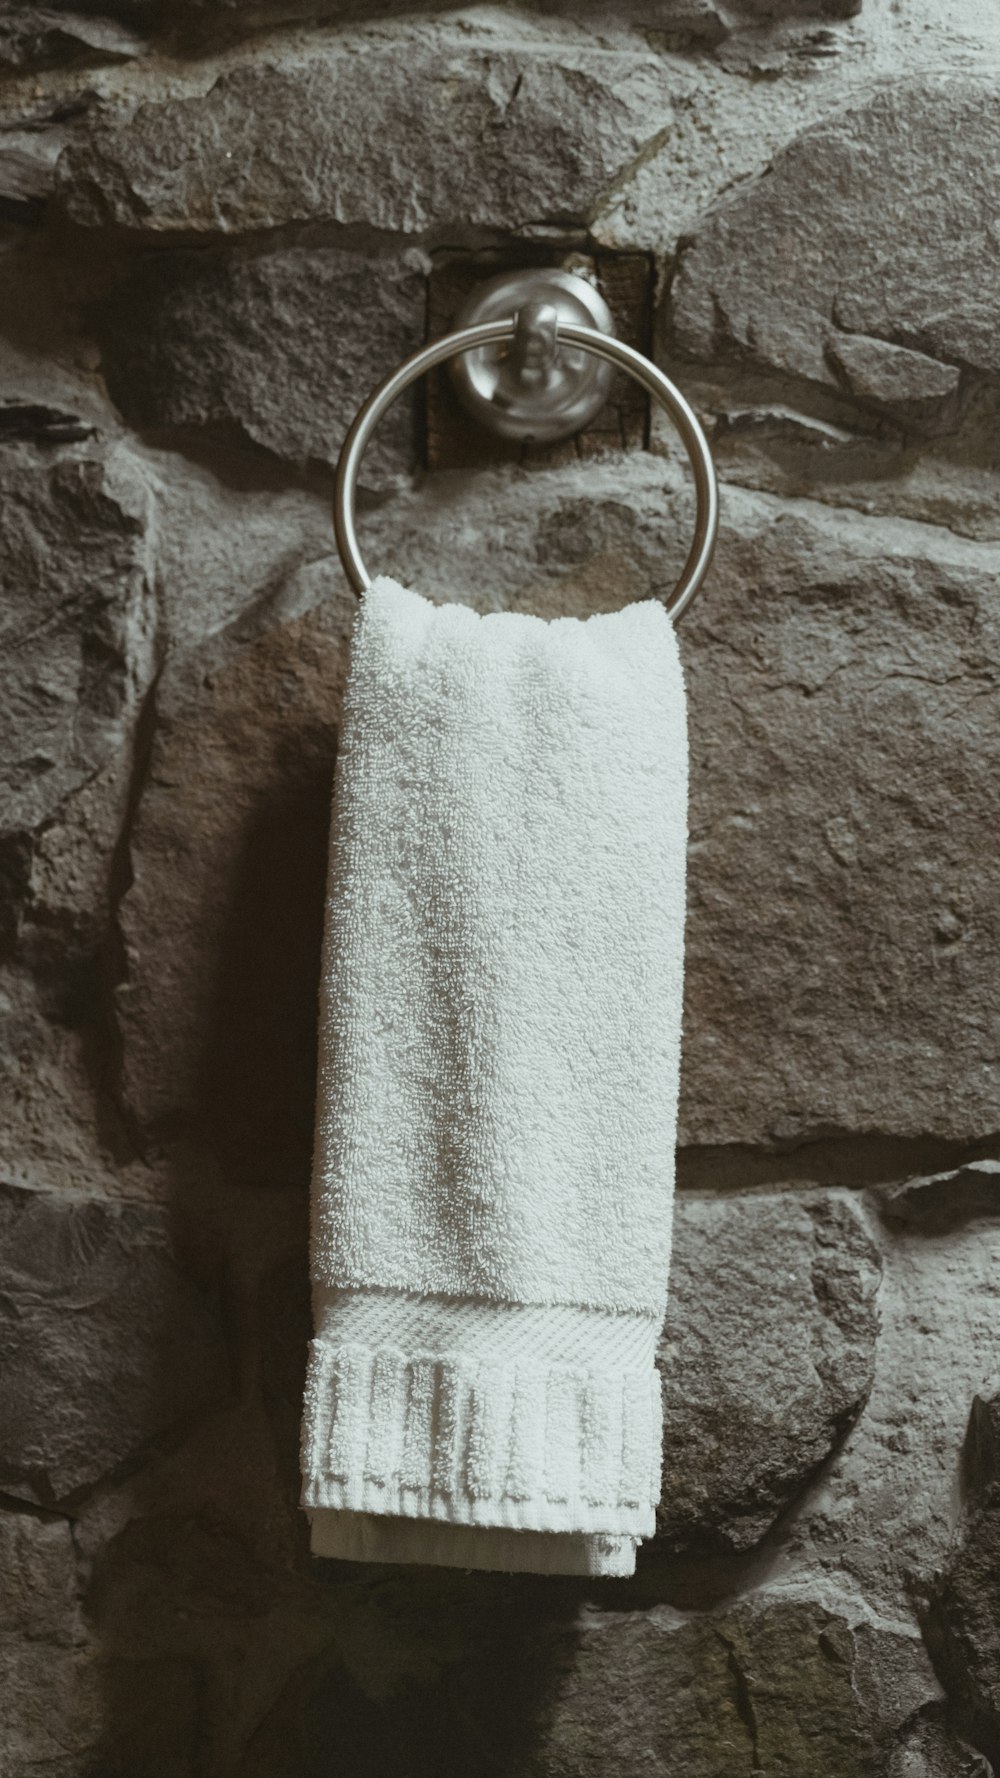 mujer colgando una toalla en un gancho en el baño. la mano de la mujer  cuelga una toalla en un colgador. Foto de alta calidad Fotografía de stock  - Alamy